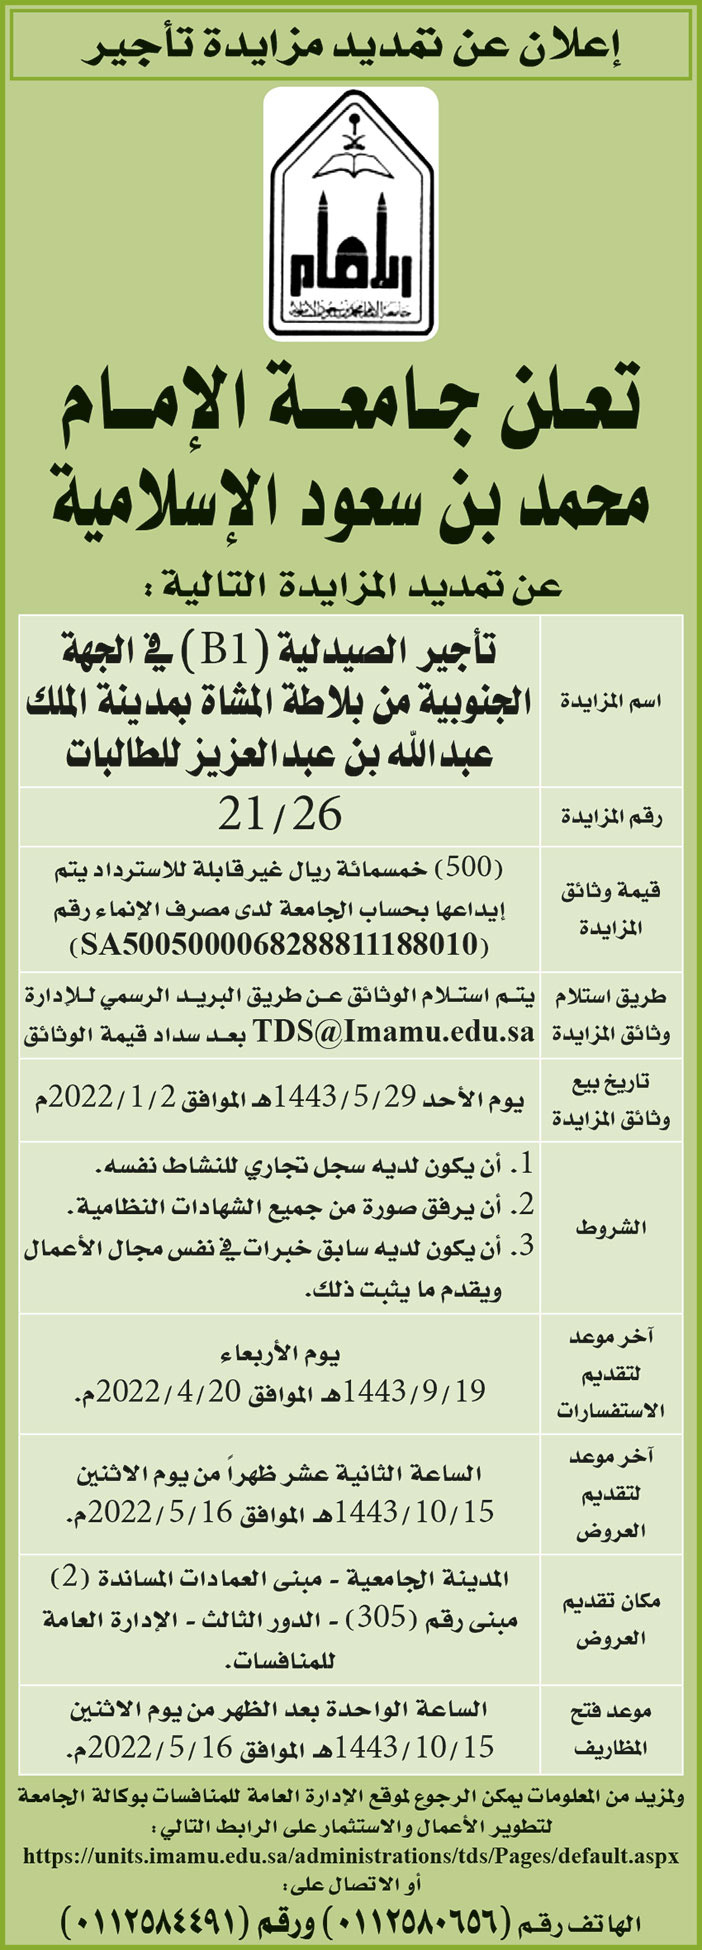 جامعة الإمام محمد بن سعود الإسلامية تمدد المزايدة على تأجير الصيدلية (B1) في الجهة الجنوبية من بلاطة المشاة بمدينة الملك عبدالله بن عبدالعزيز للطالبات 